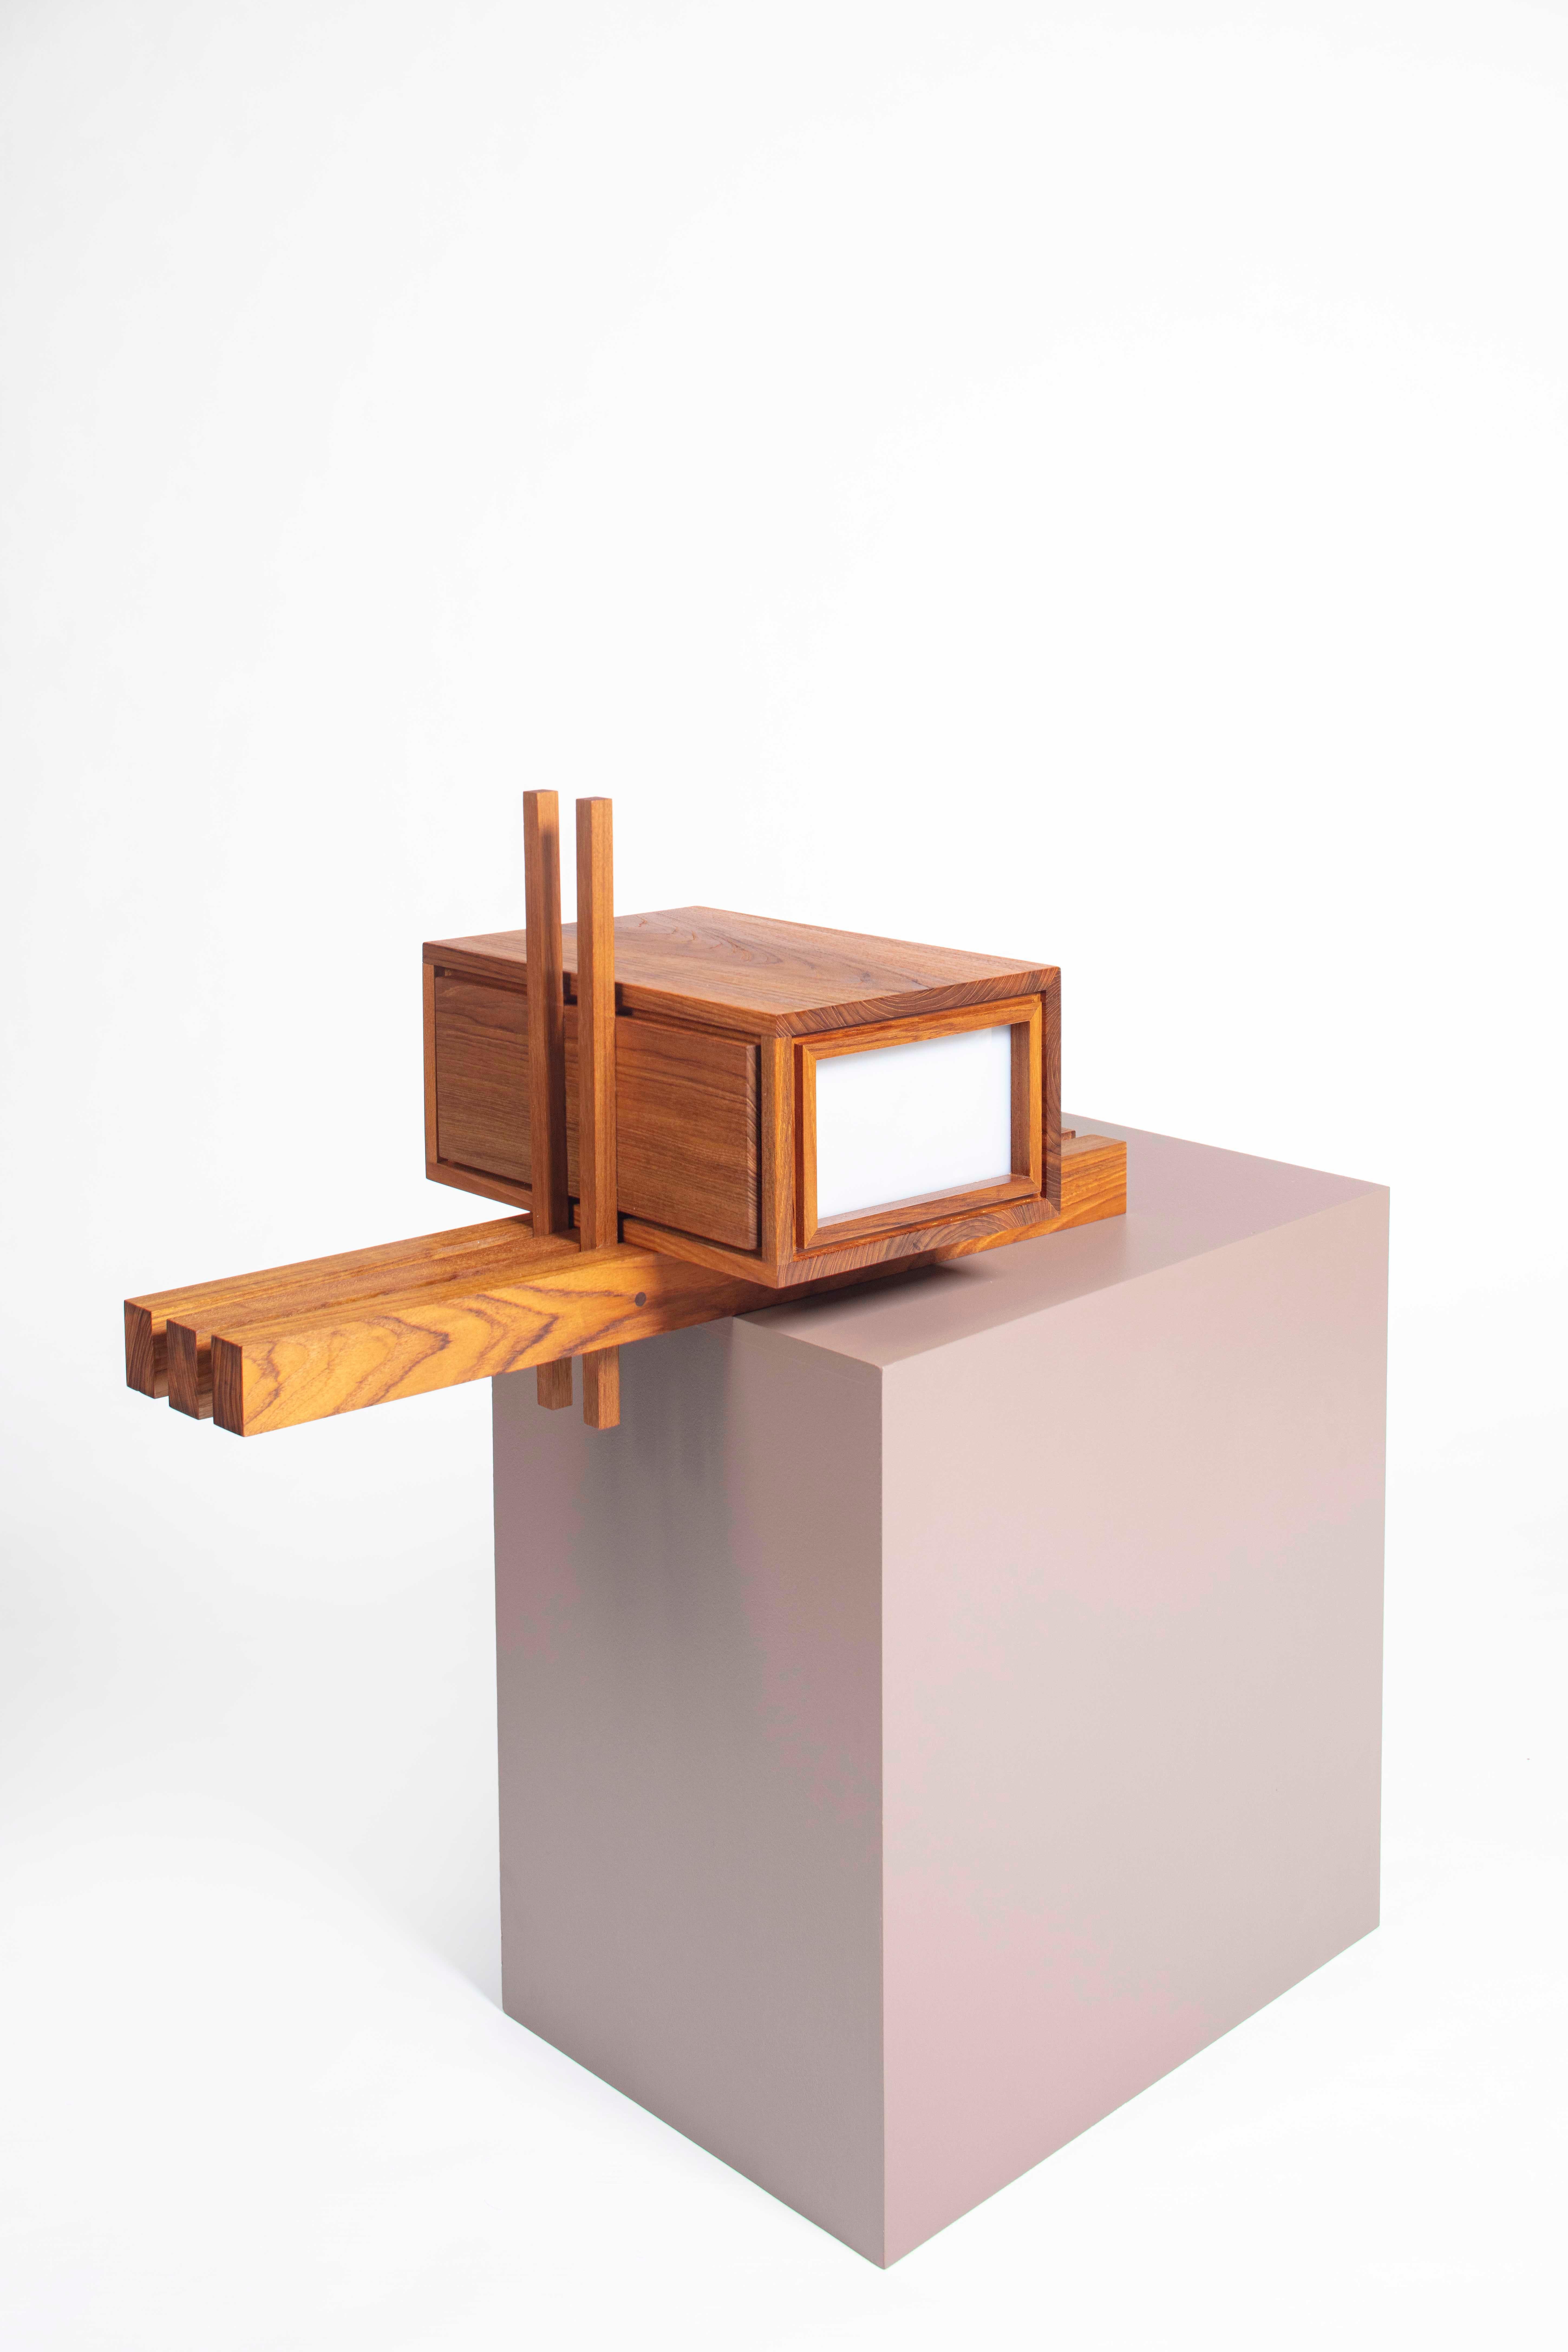 Boîte à lettres Ray Kappe RK8 par Original à Berlin, Allemagne, 2020

Le modernisme californien est synonyme de structures minimales sophistiquées, présentant un design ouvert et un Living in/One, inspiré de l'architecture japonaise